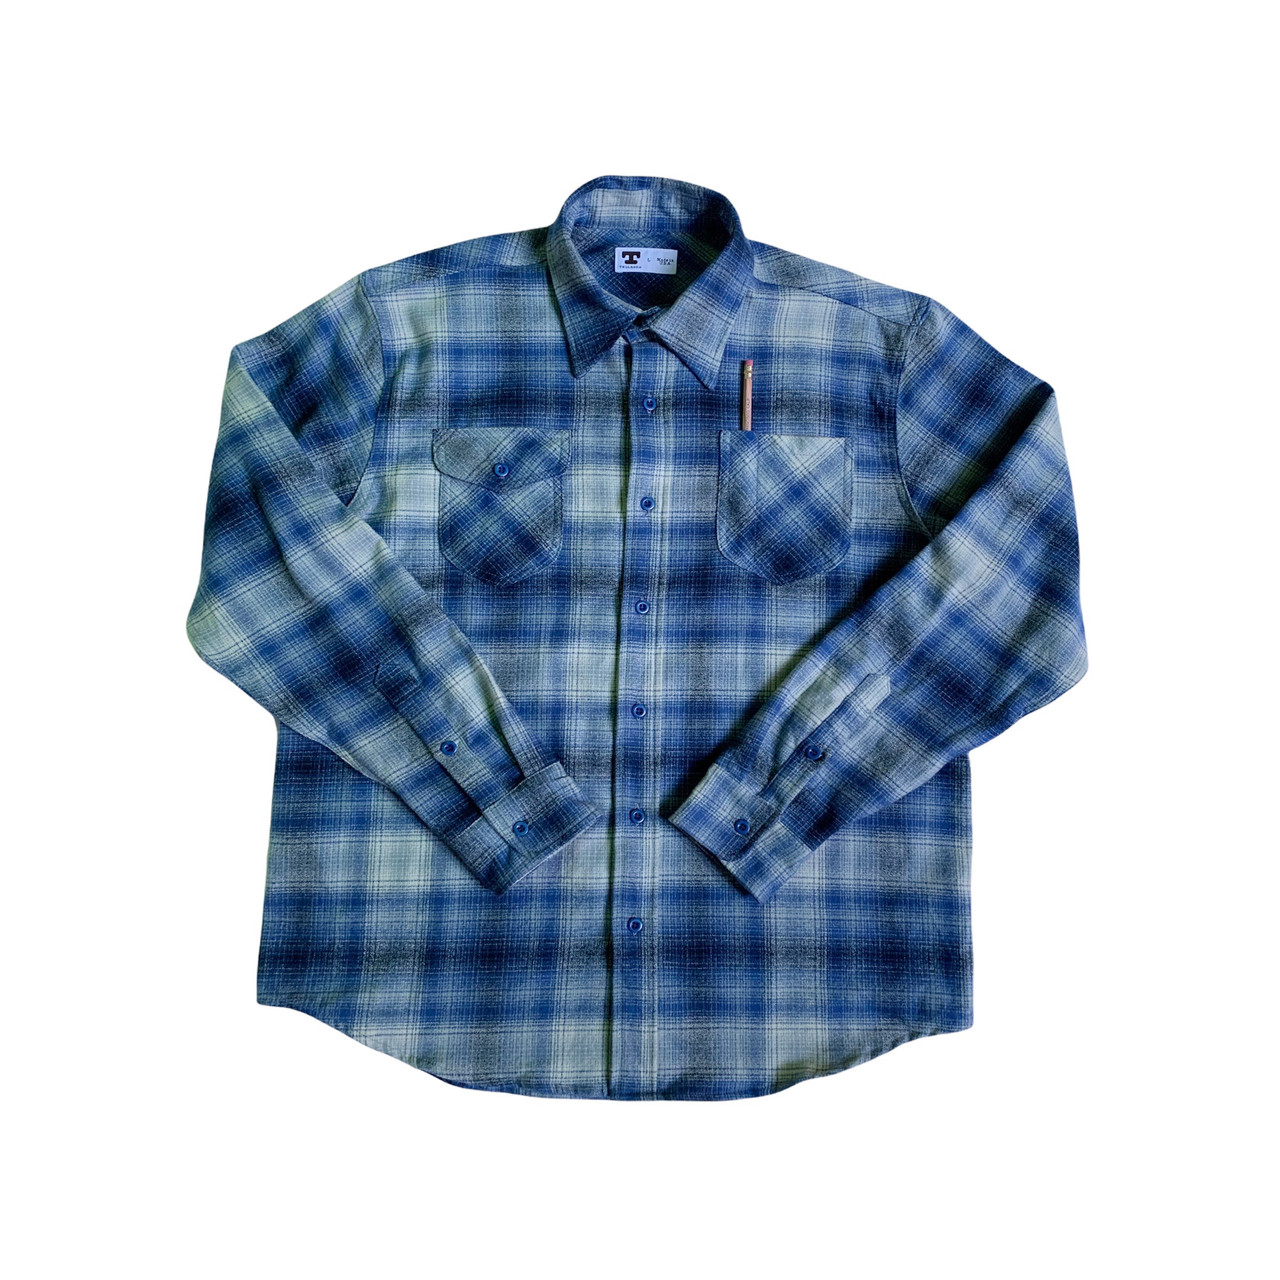 Grey & Blue Plaid Flannel Shirt